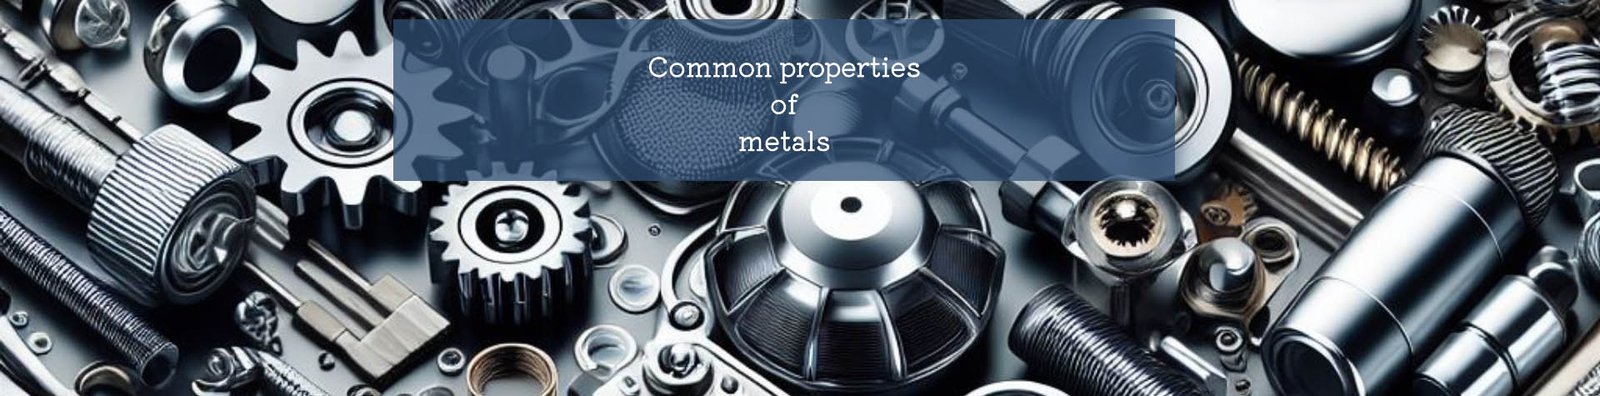 metals header image